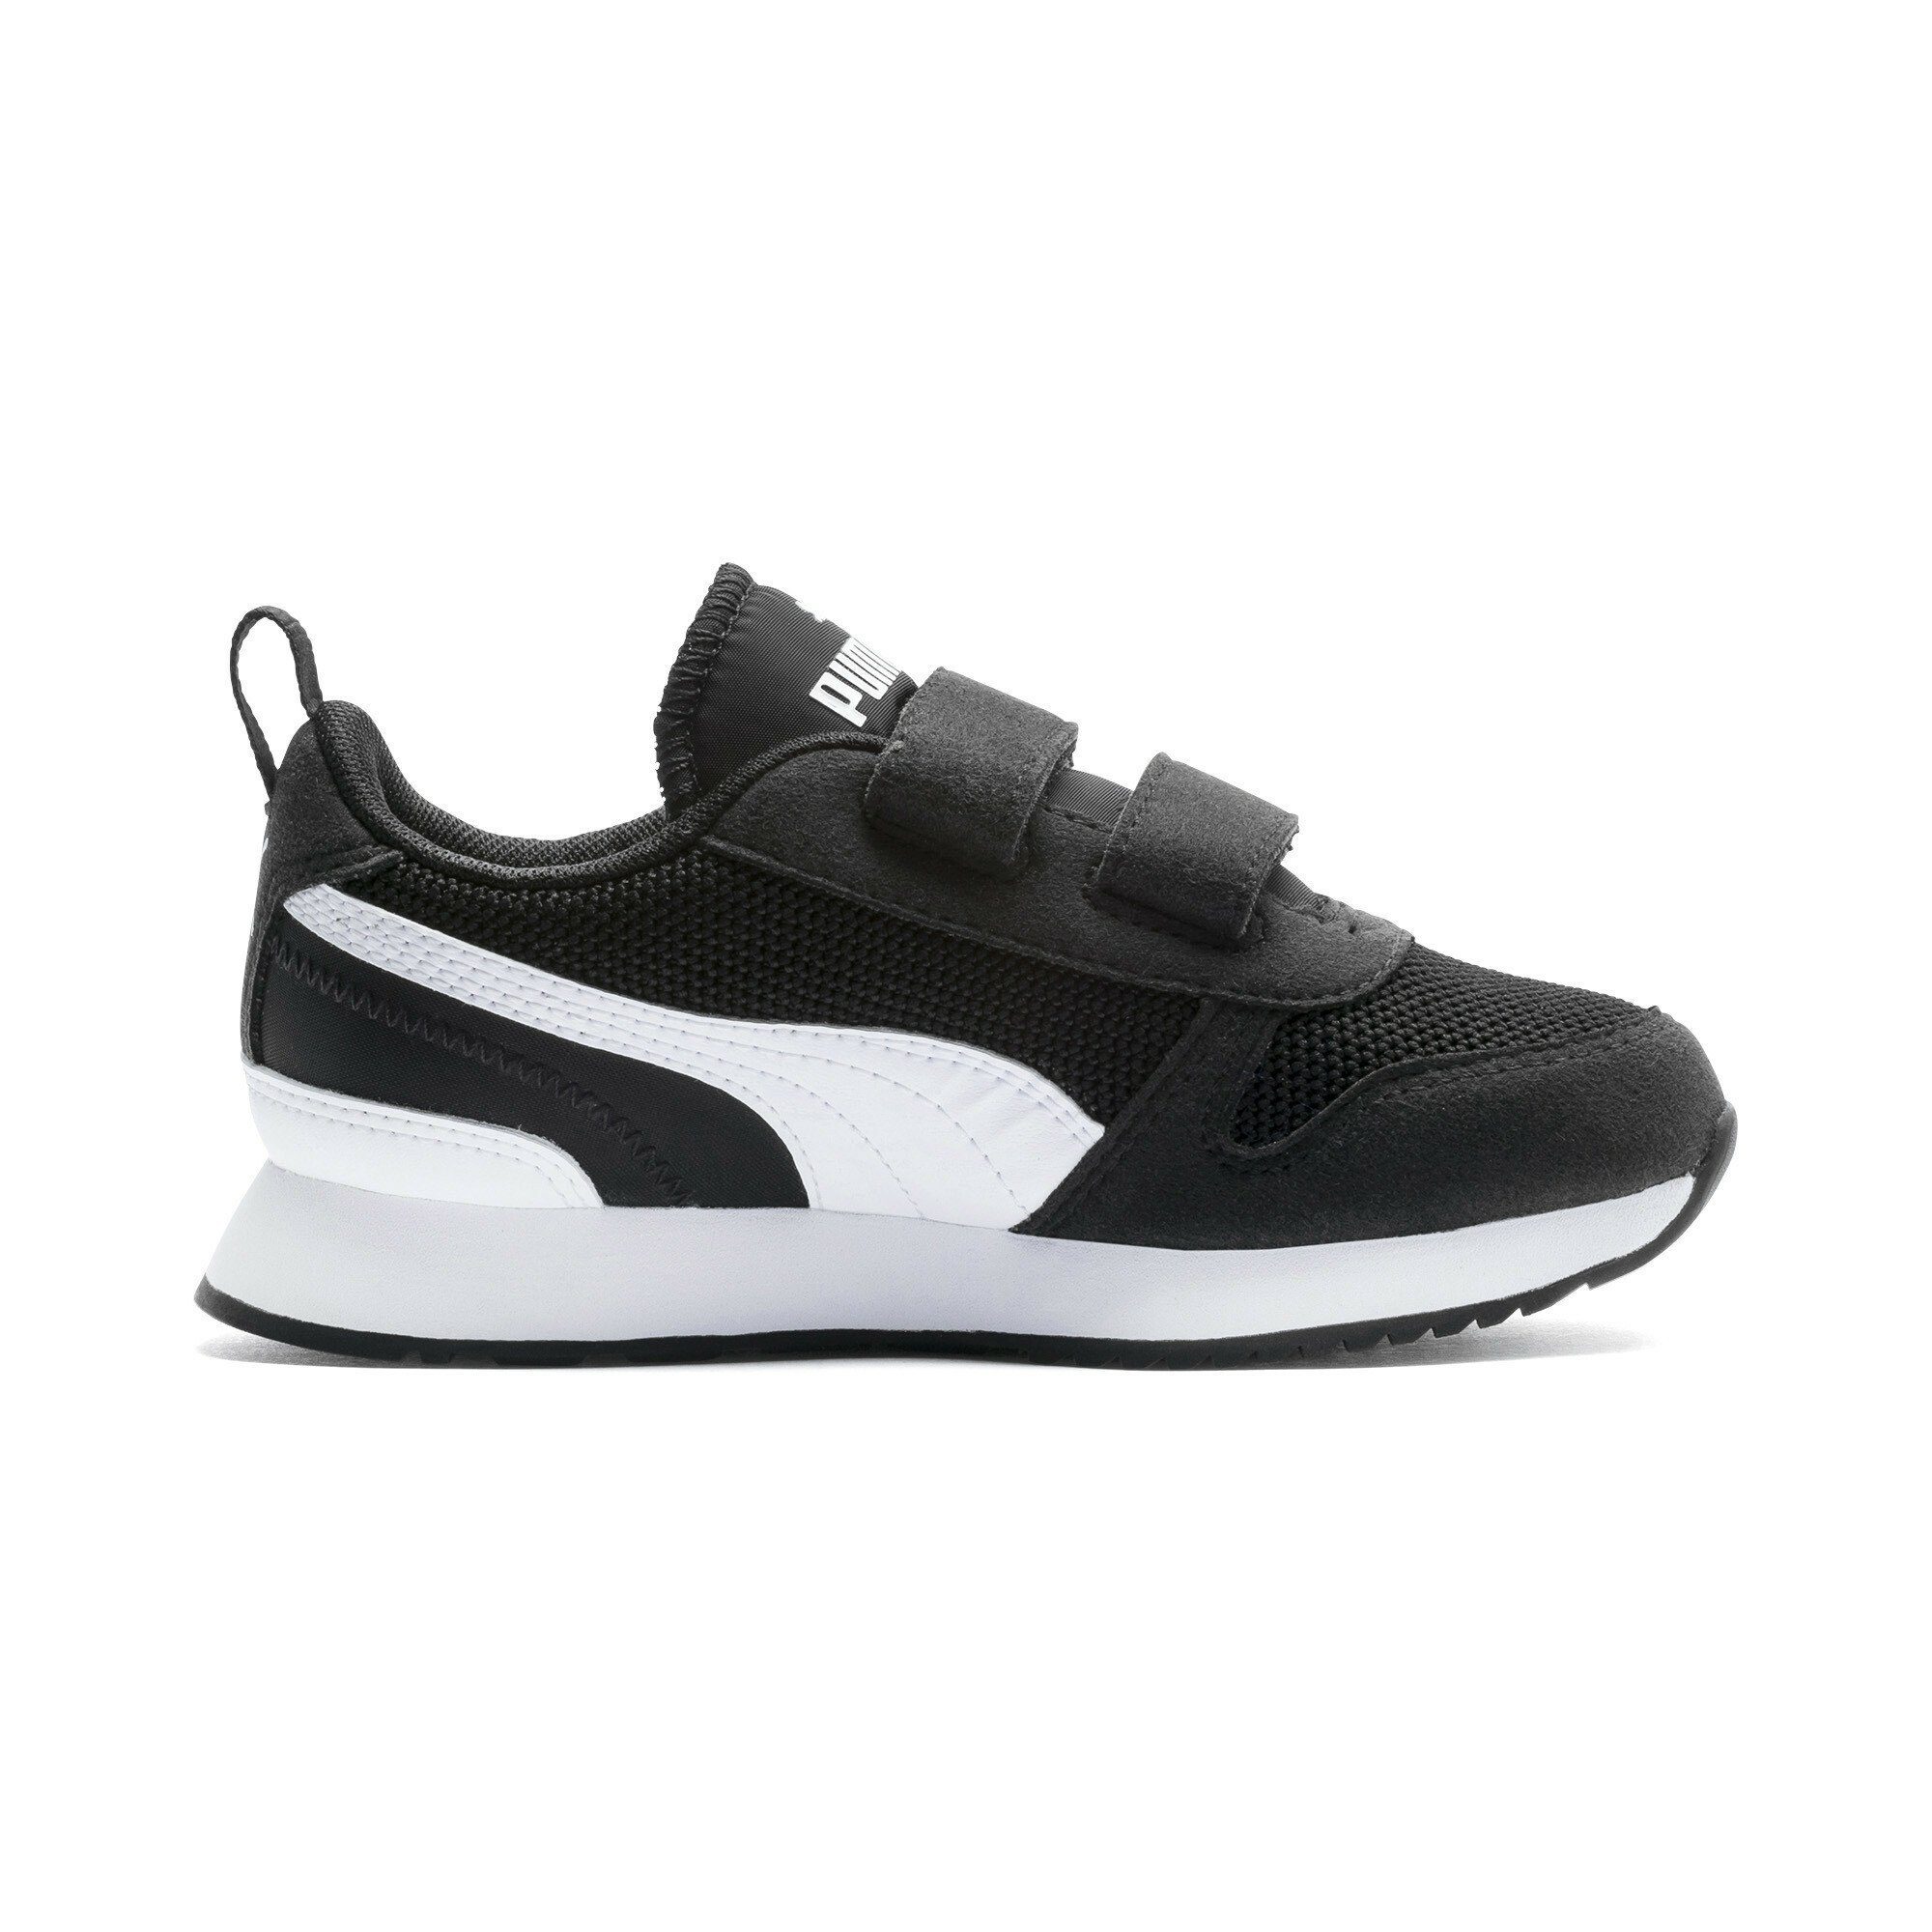 White Jugendliche R78 Black Laufschuh Sneaker PUMA